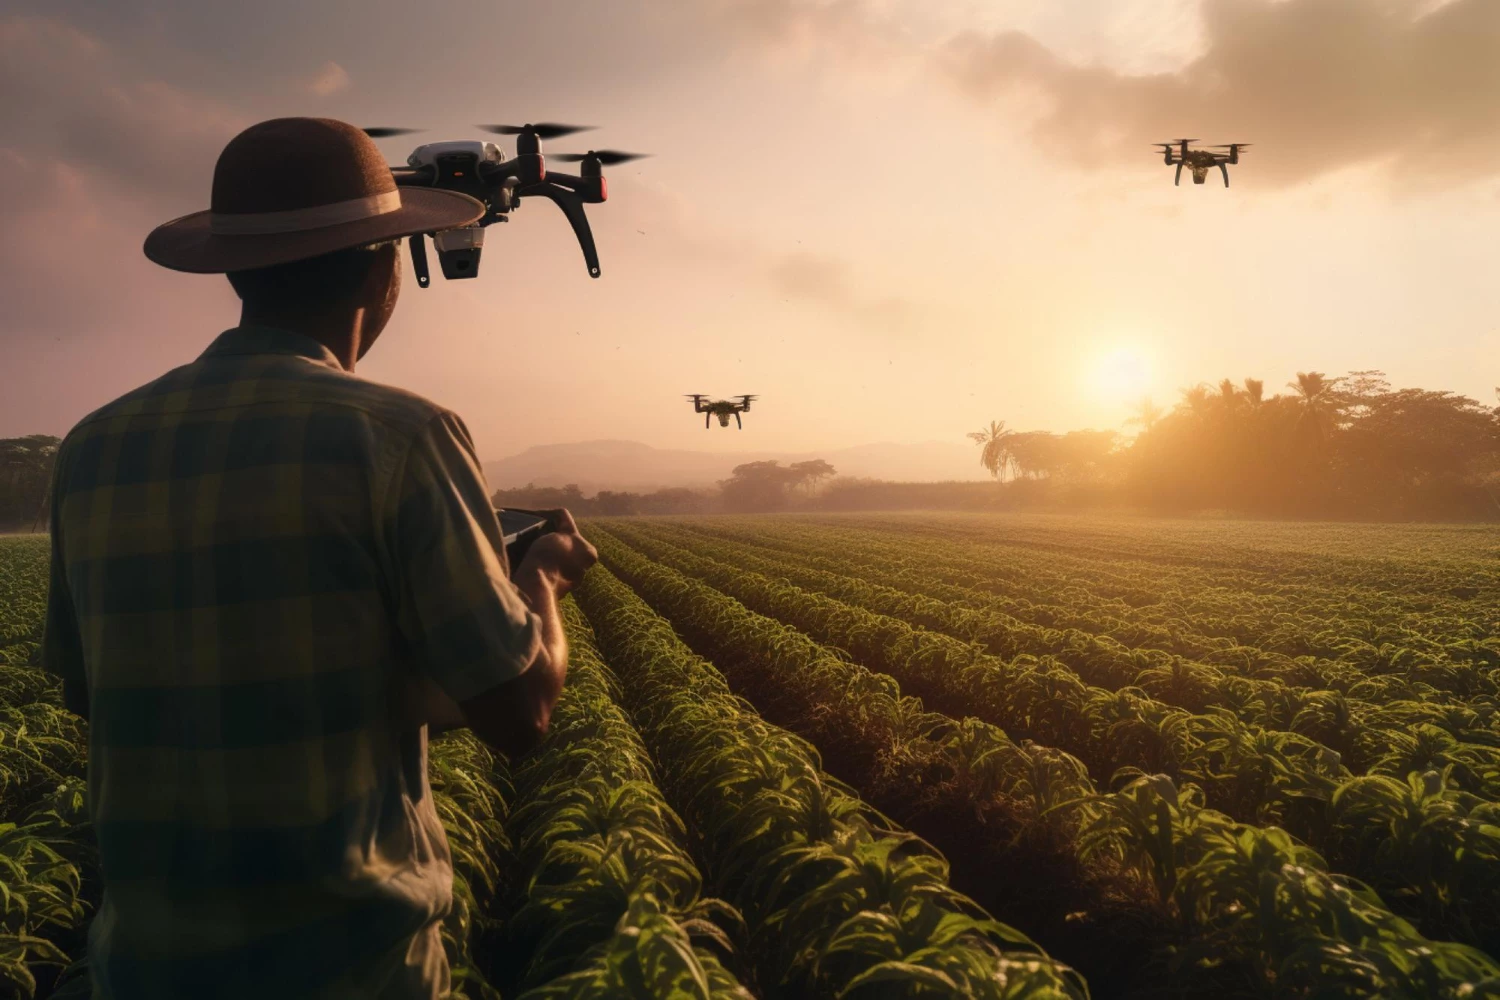 Máquinas autônomas: O futuro da agricultura ou apenas uma tendência passageira?